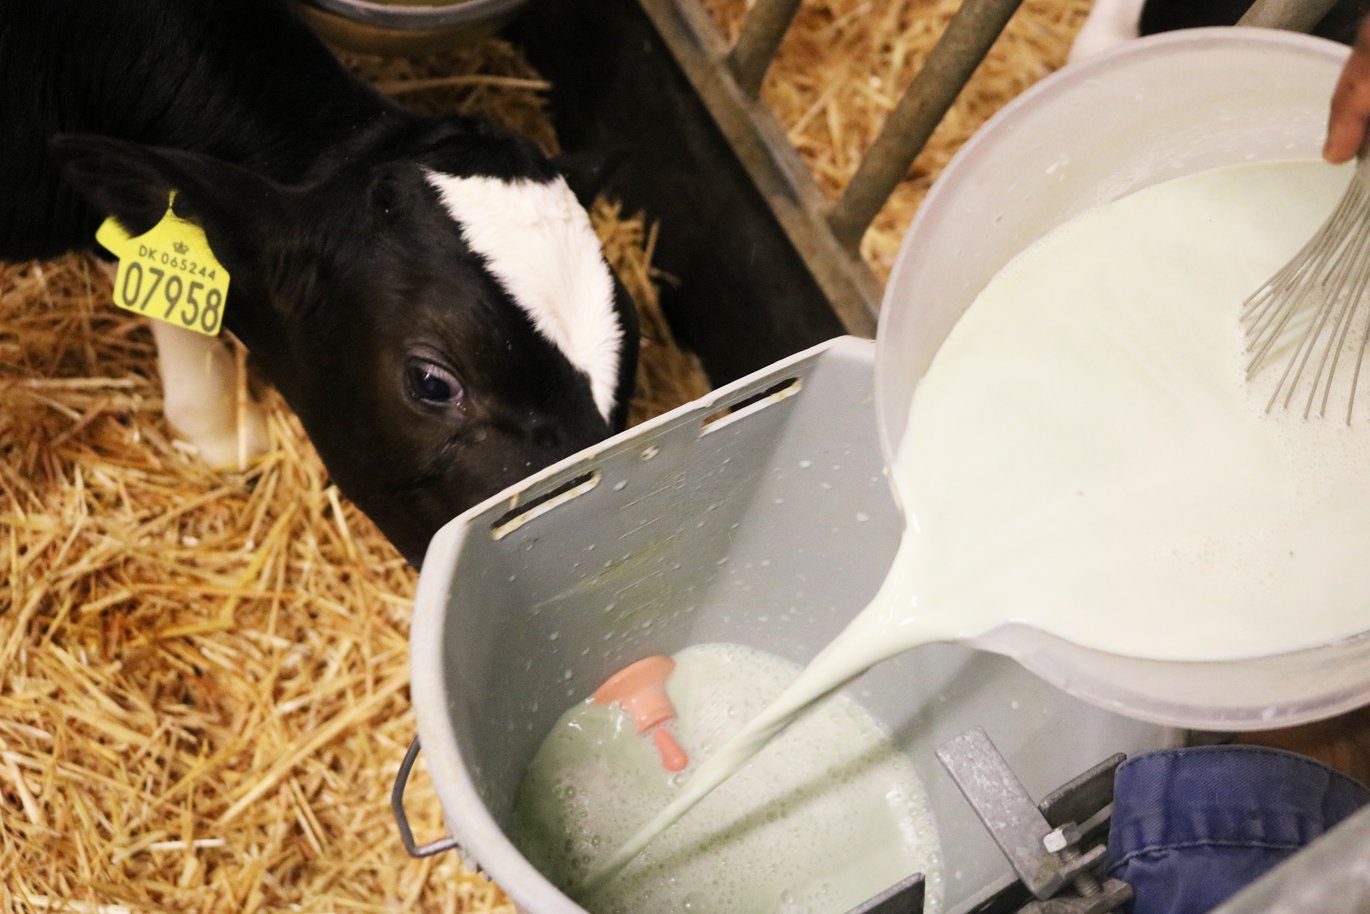 Forskere ved Aarhus Universitet har gennemført fodringsforsøg med tangpulver i mælken til kalve. Foto: Linda S. Sørensen.